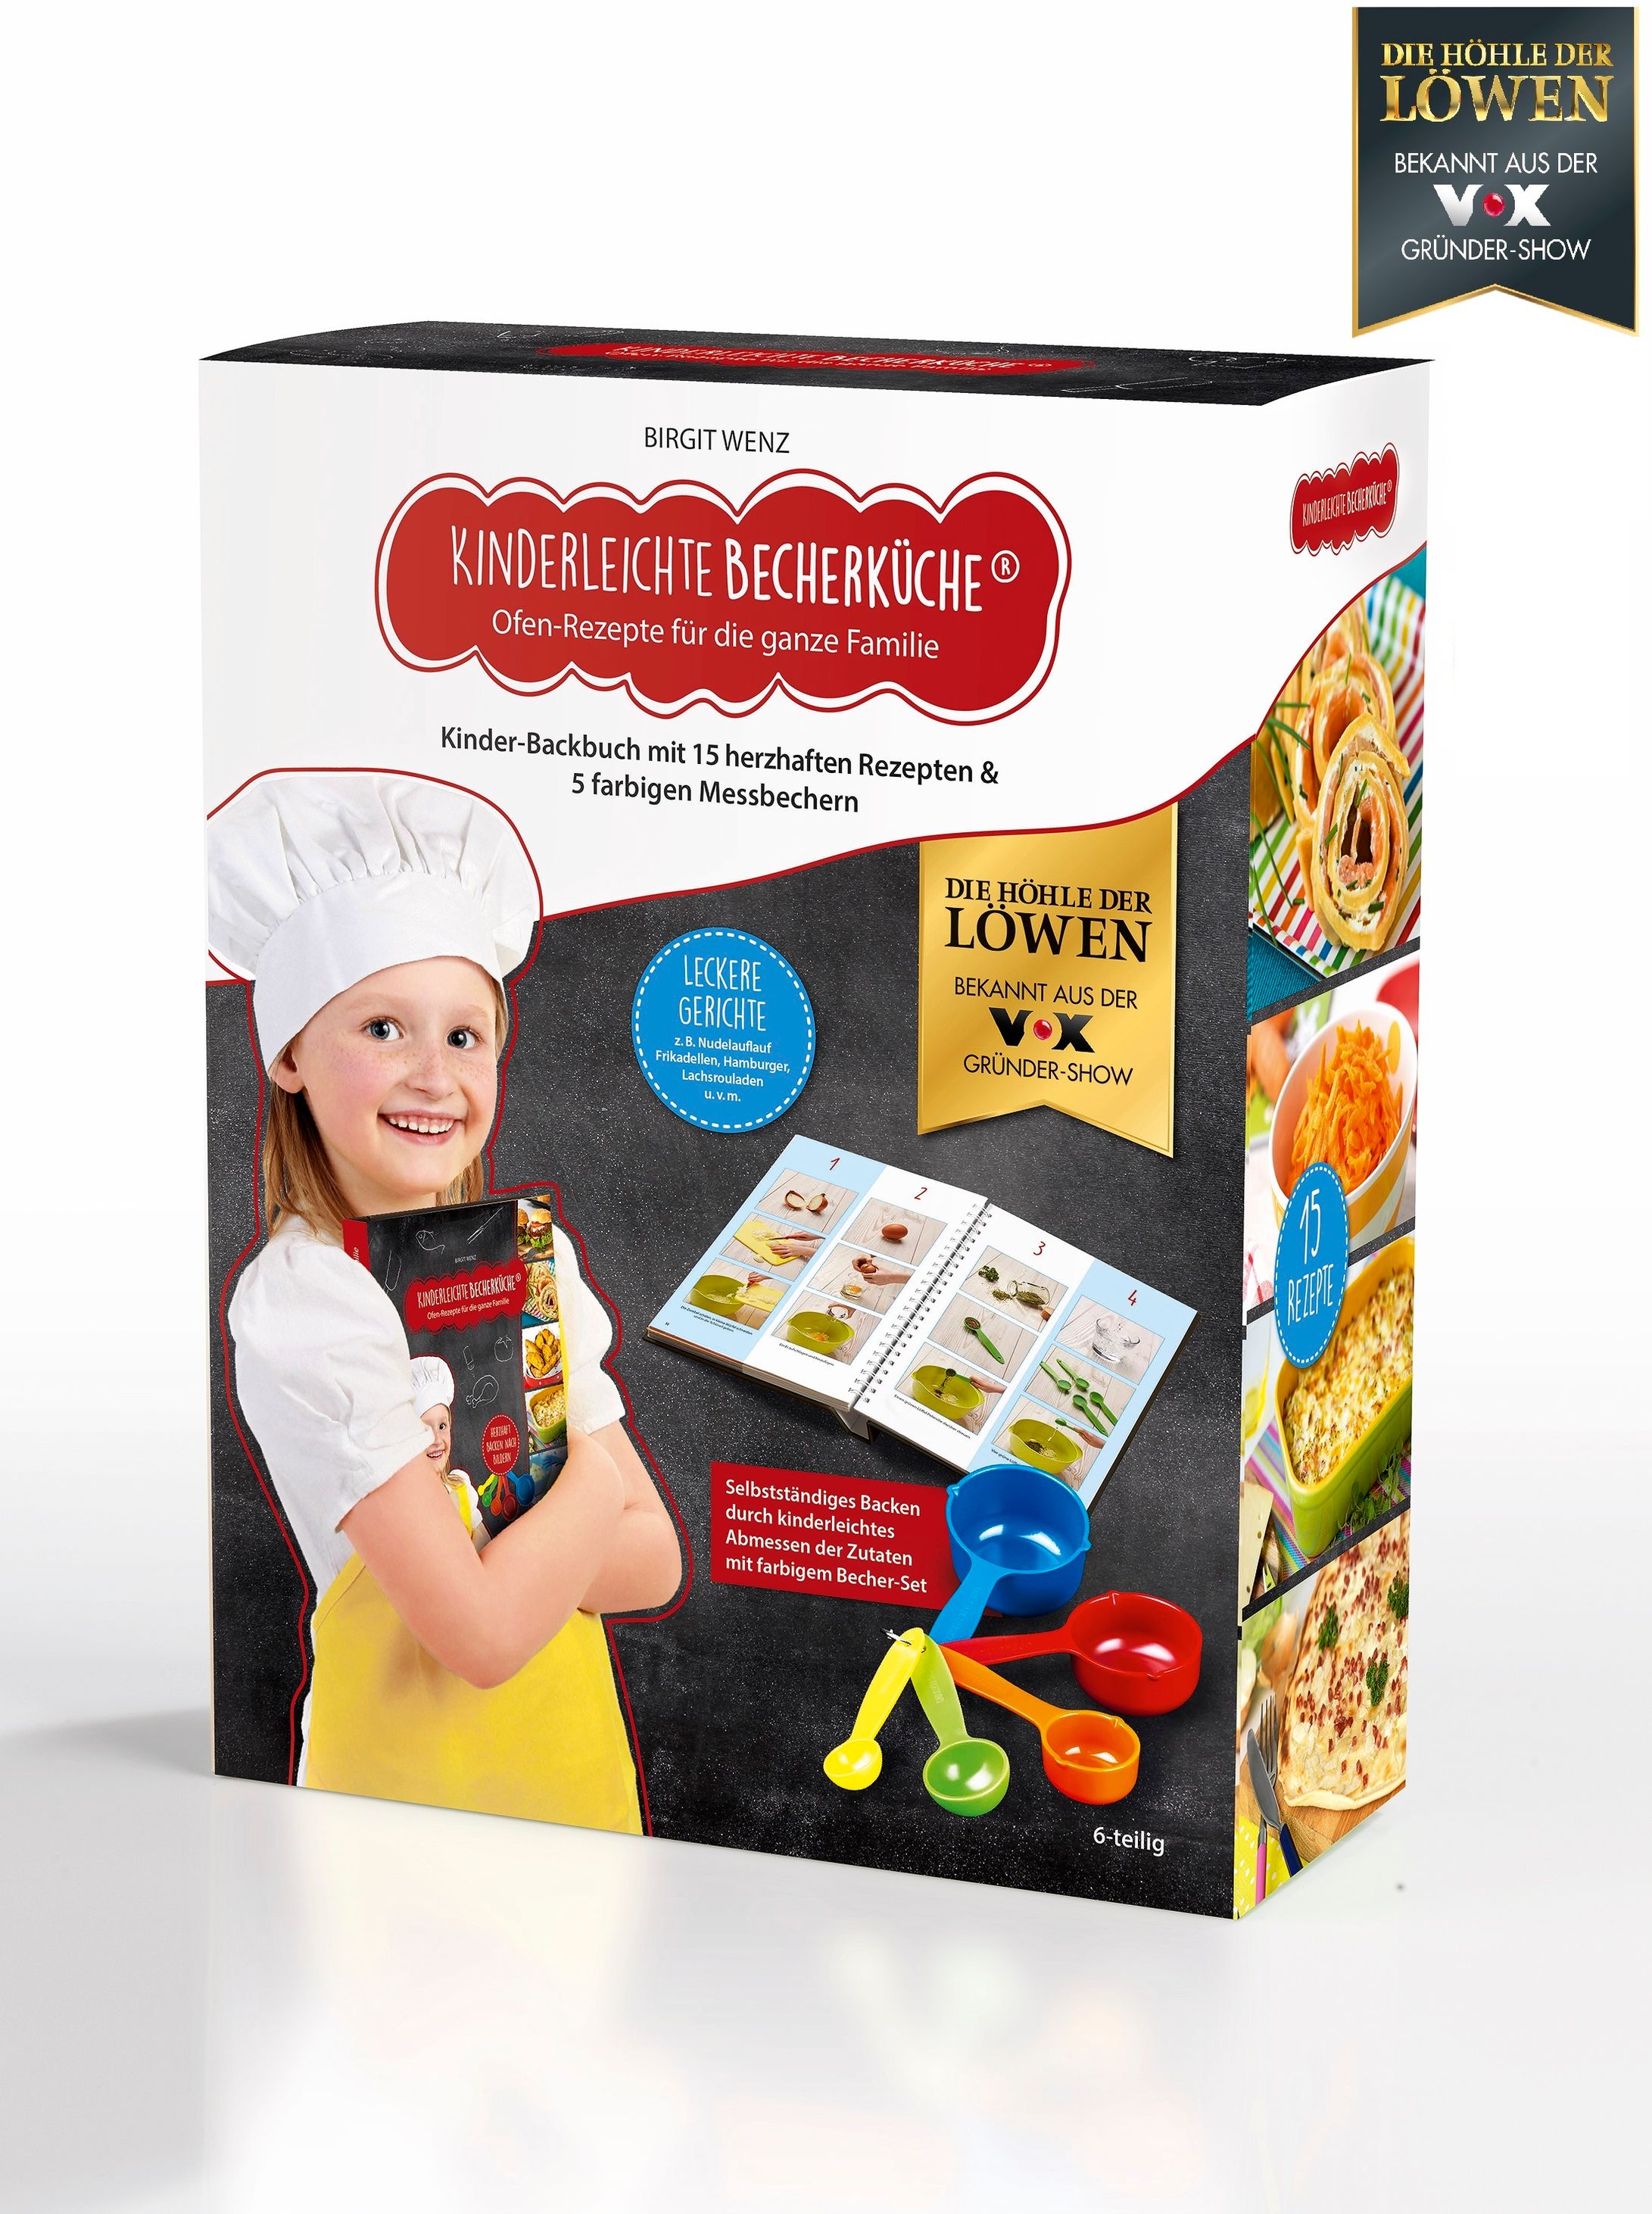 Kinderleichte Becherküche, Herzhaftes mit Ofen-Rezepten | Weltbild.de